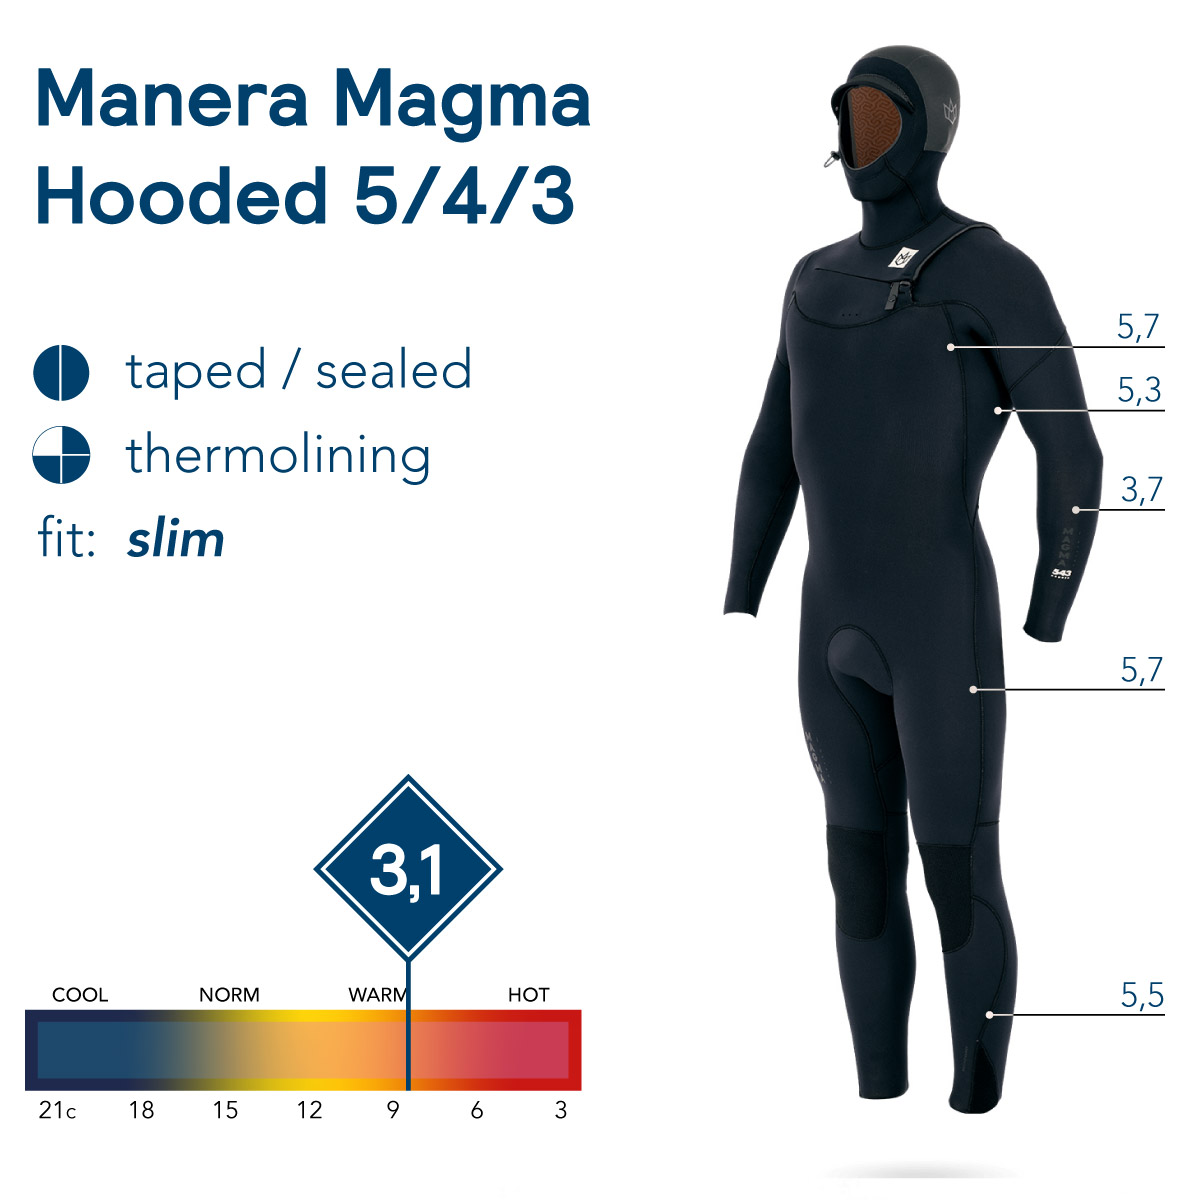 Manera Magma X10D Versus